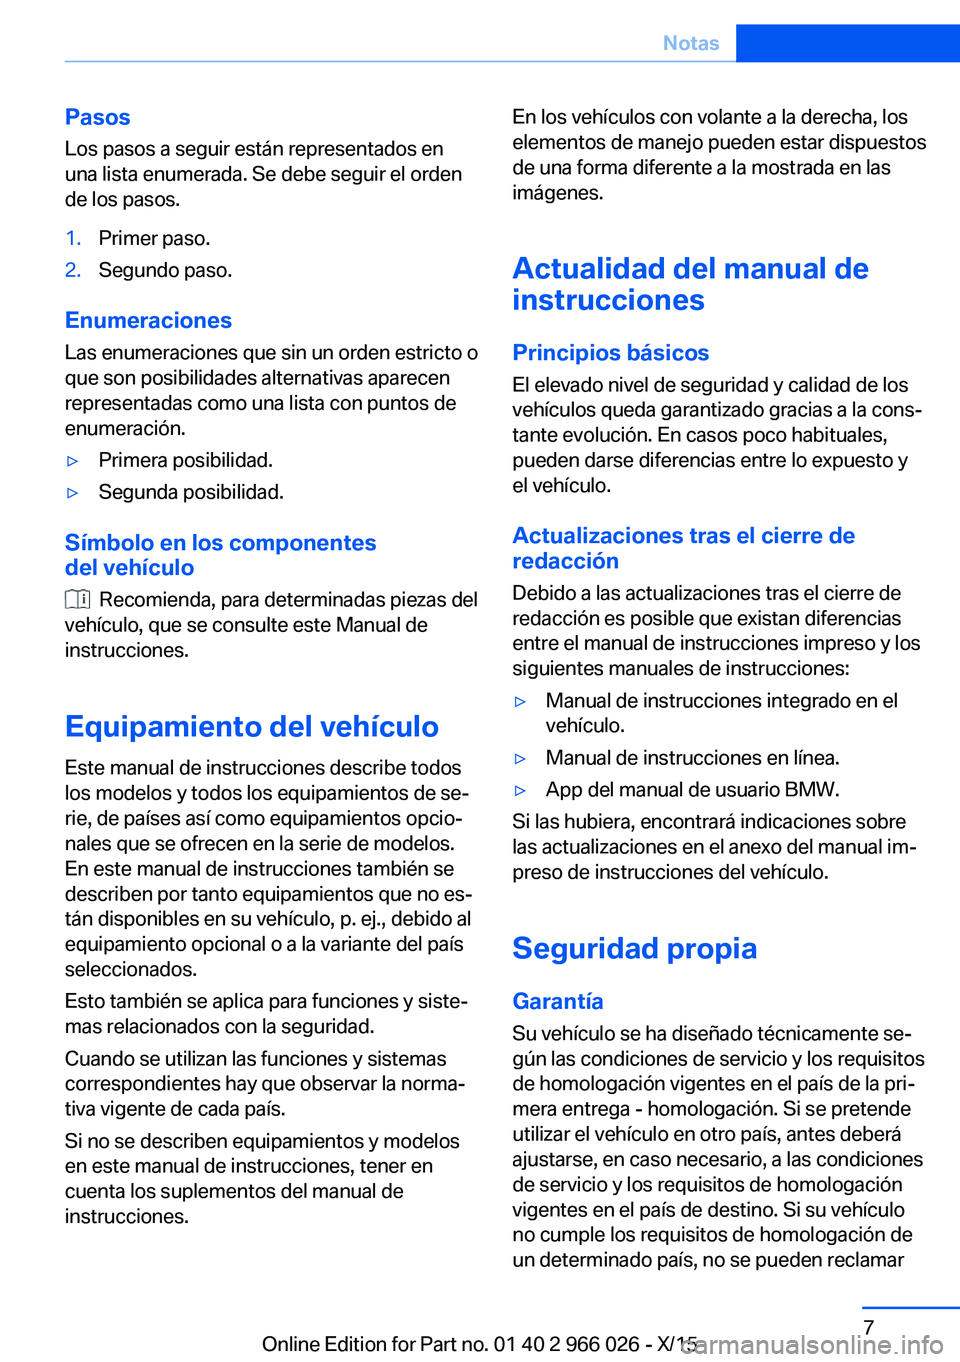 BMW X6 2016  Manuales de Empleo (in Spanish) Pasos
Los pasos a seguir están representados en
una lista enumerada. Se debe seguir el orden
de los pasos.1.Primer paso.2.Segundo paso.
Enumeraciones
Las enumeraciones que sin un orden estricto o
que